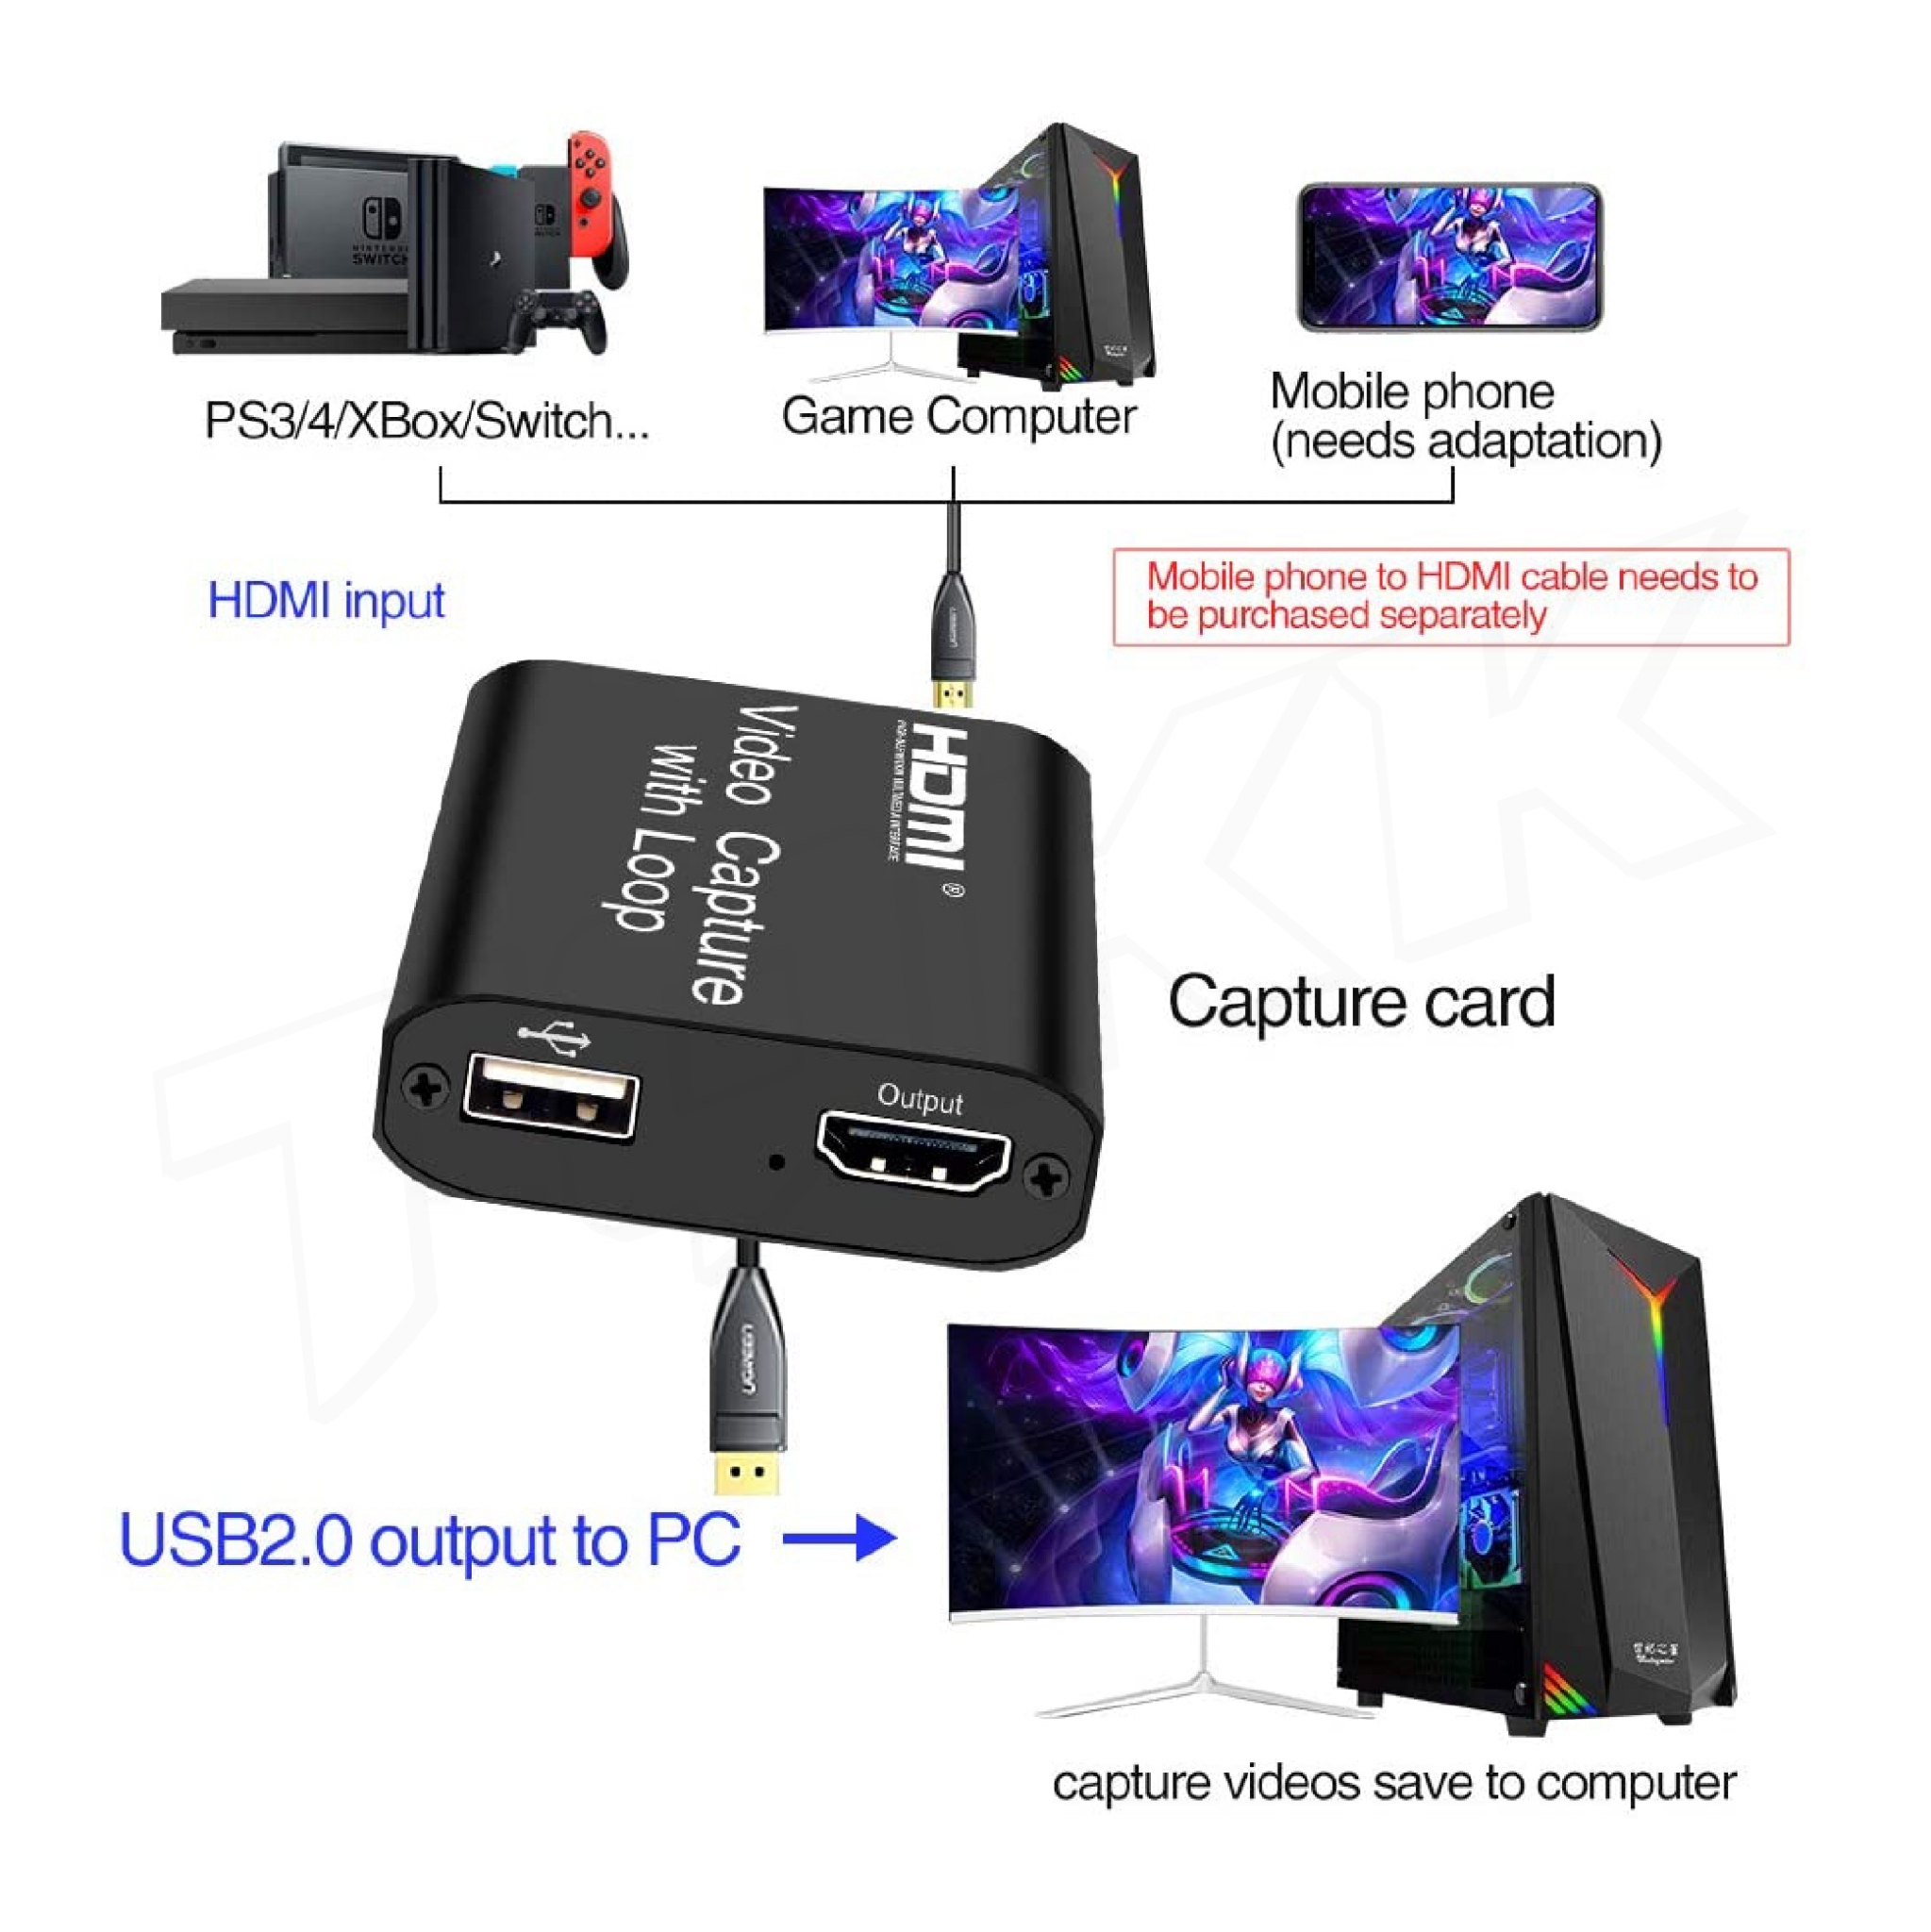 ภาพประกอบคำอธิบาย HDMI Capture with Loop รุ่น JW-09 4K 1080P Video Capture HDMI to USB Video Capture Card /Mavis Link Audio Video Capture